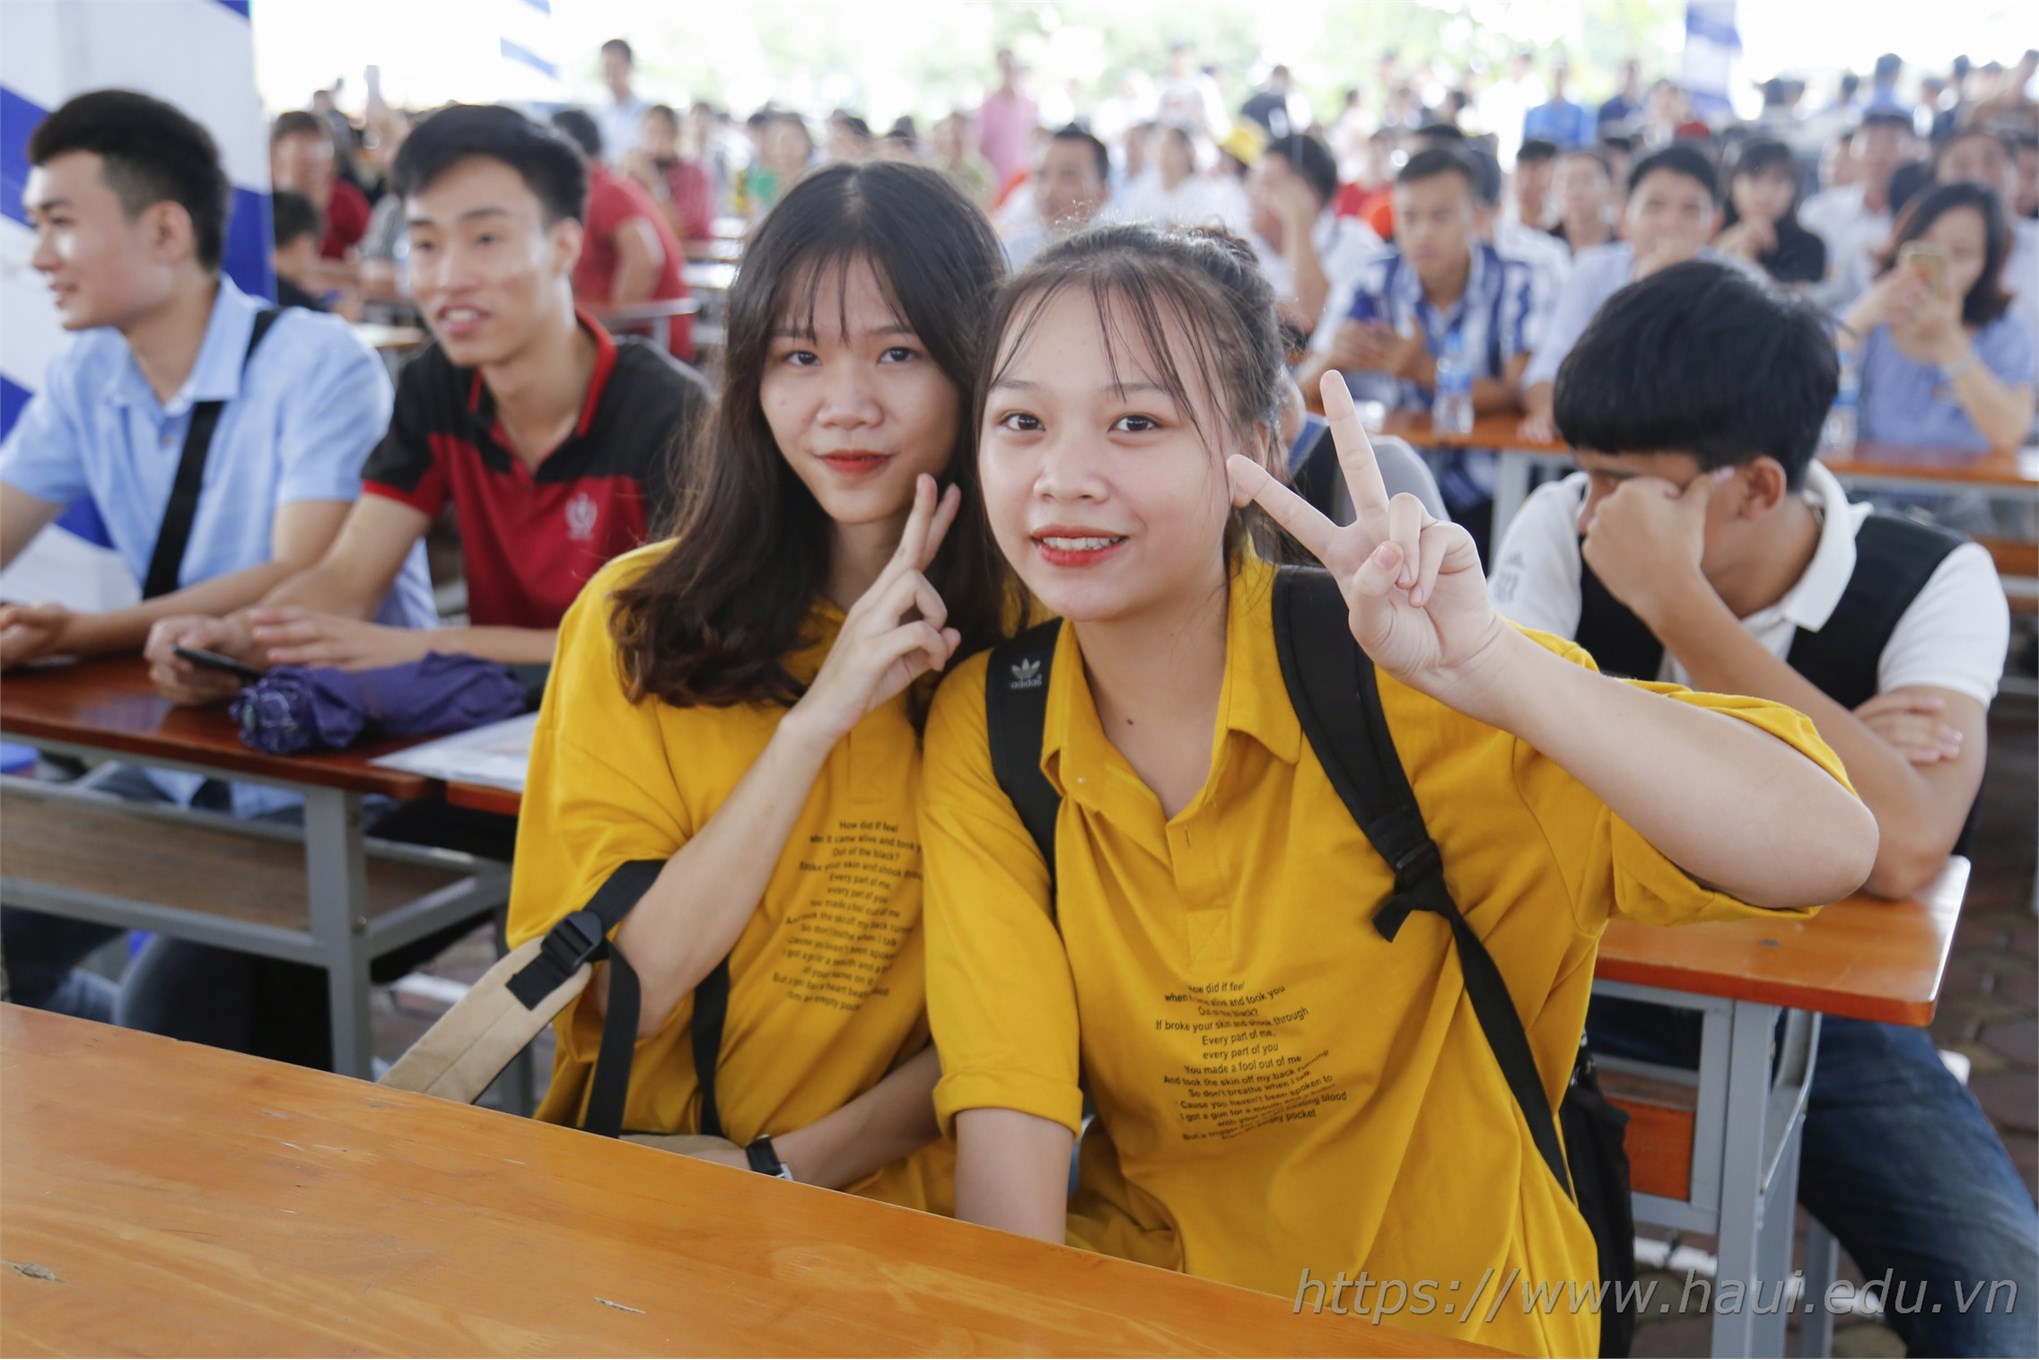 Ngày hội chào tân sinh viên Đại học Công nghiệp Hà Nội năm 2019